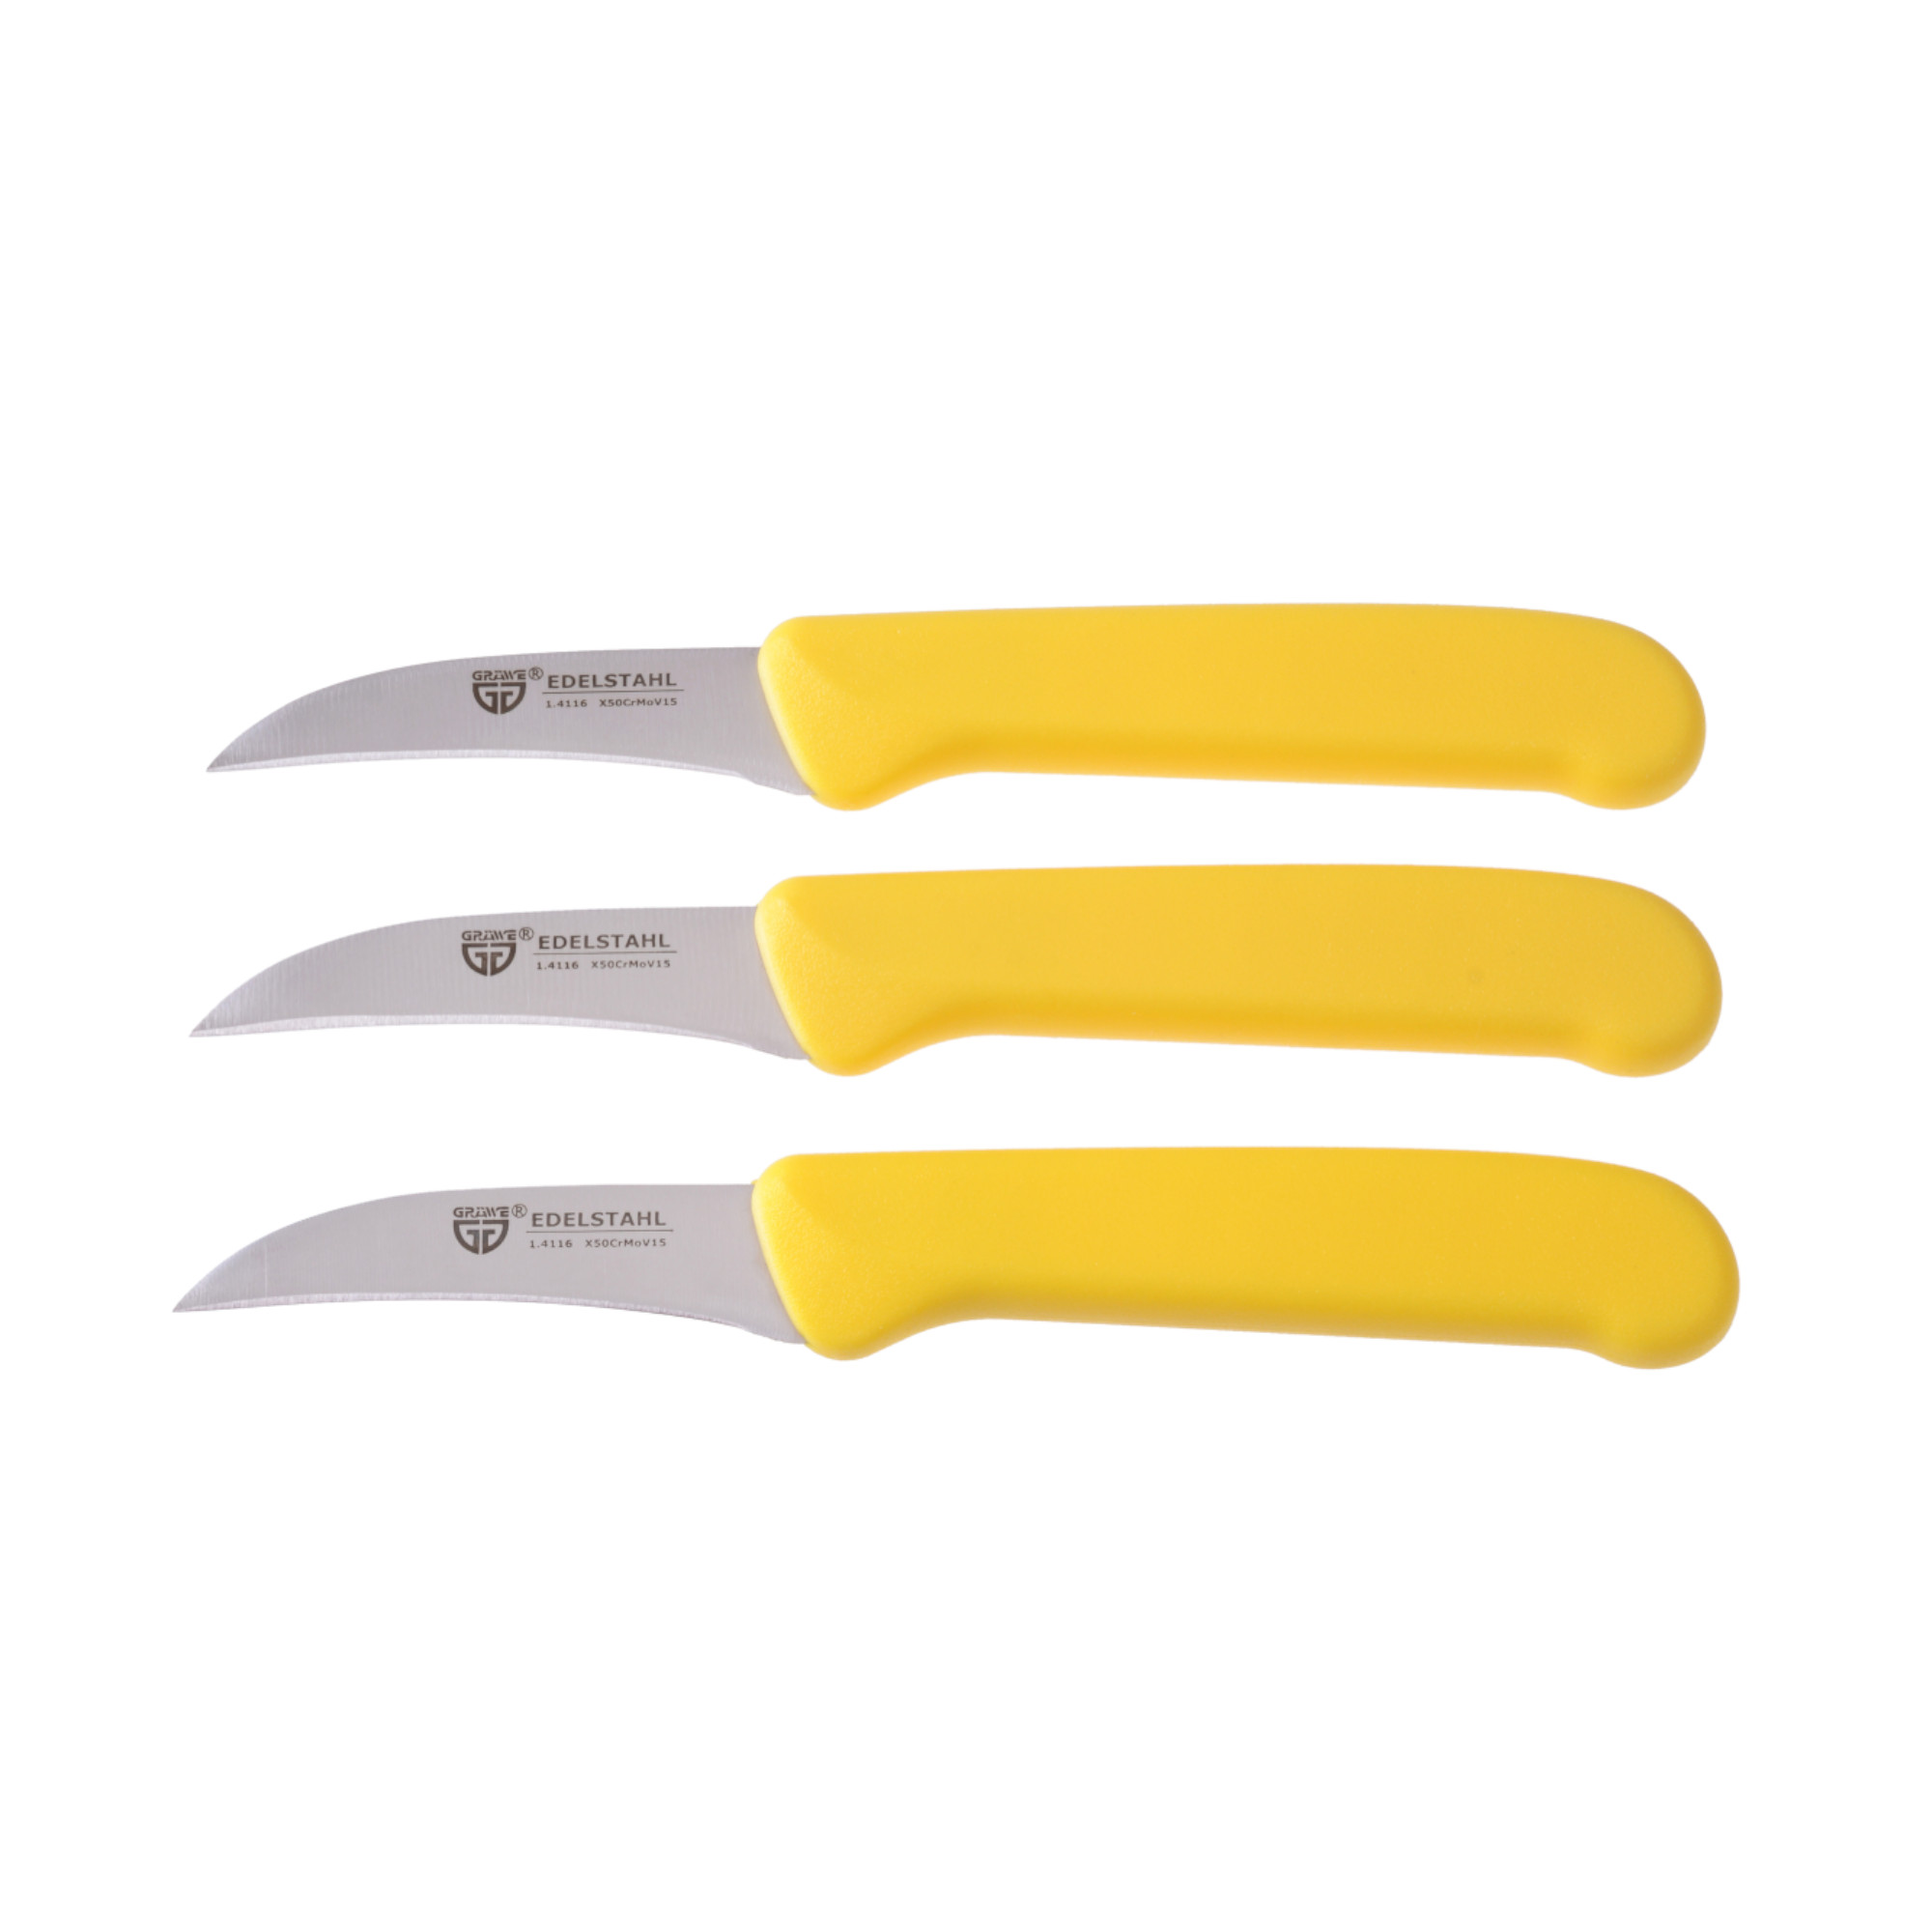 Küchenmesser 3 Stück, Edelstahl gelb